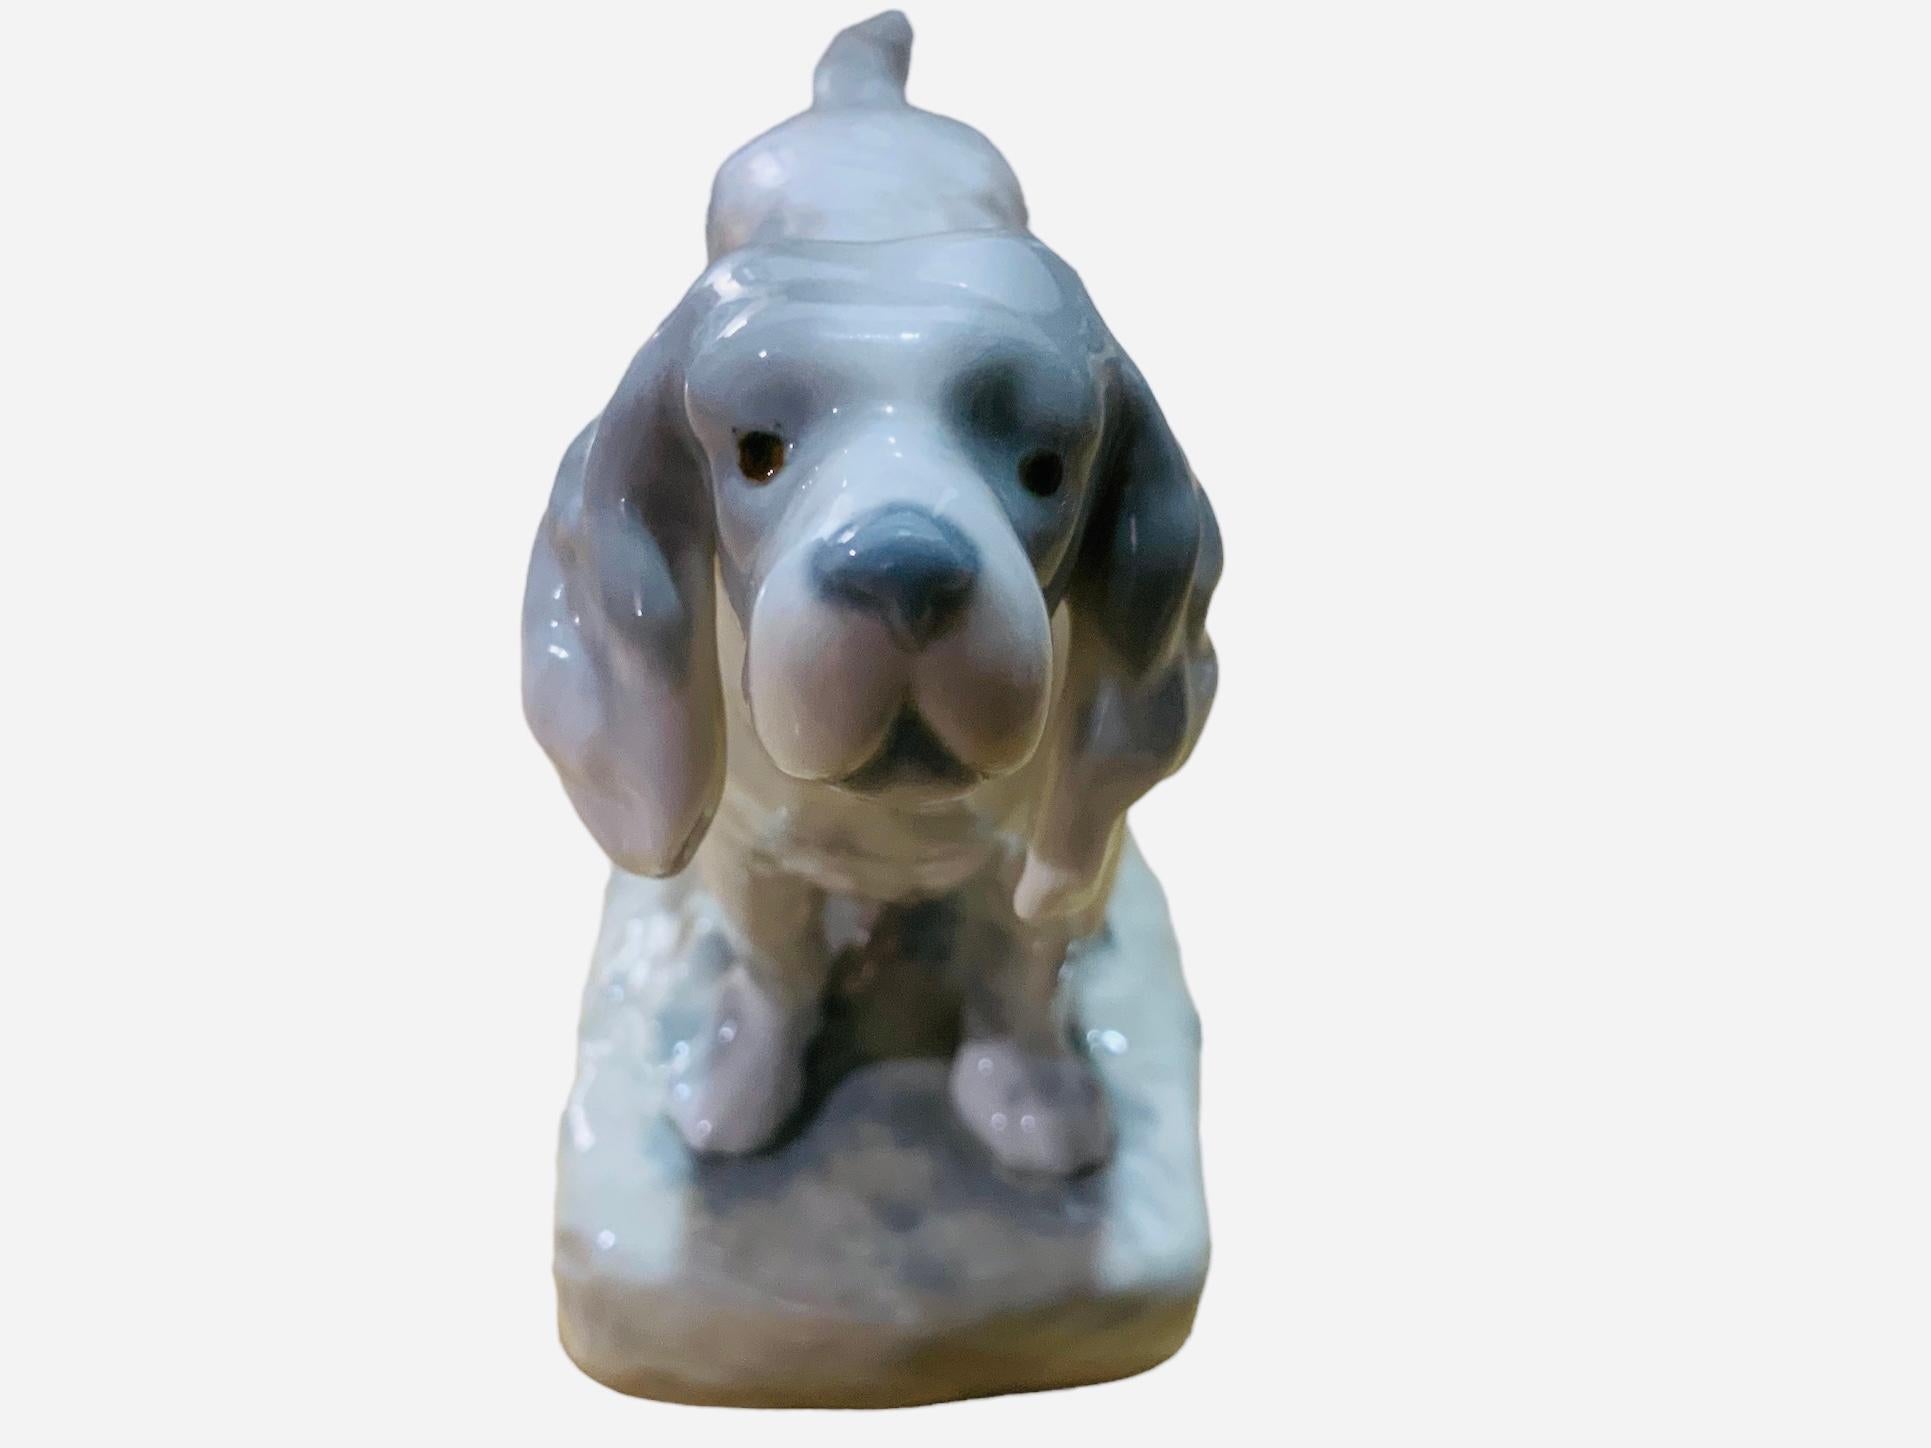 Dies ist eine Rex Valencia Porzellanfigur eines Hundes. Es zeigt einen handgemalten, grau-weiß gefärbten English Setter Hund, der auf einem Sockel steht, der mit einem abgeschnittenen Baumstamm und Erde verziert ist. Er hat einen beigen Gürtel im